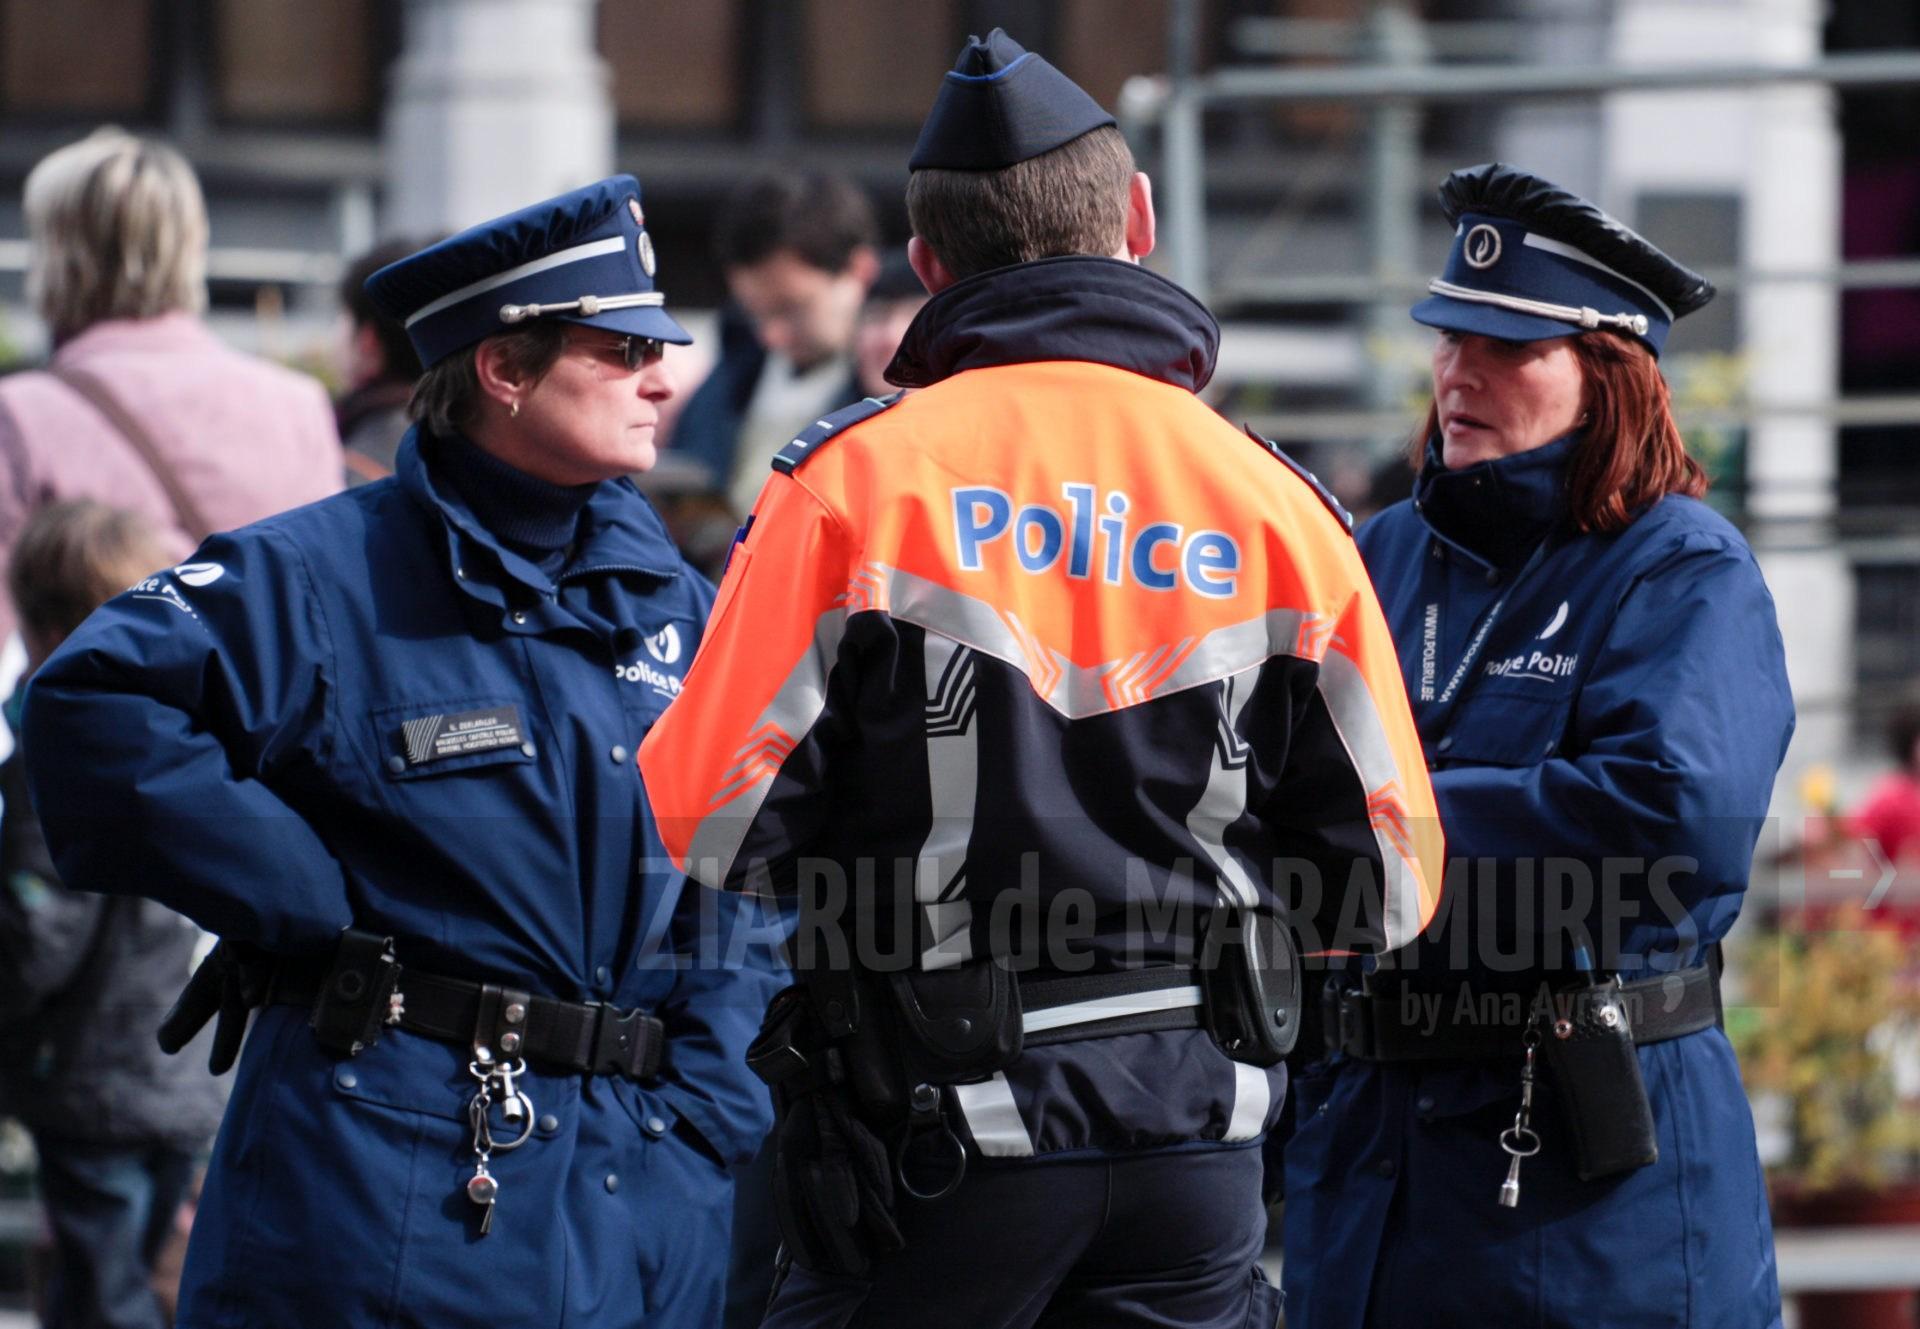 Cel puțin 26 de polițiști au fost răniți în timp ce încercau să disperseze o manifestație la Bruxelles